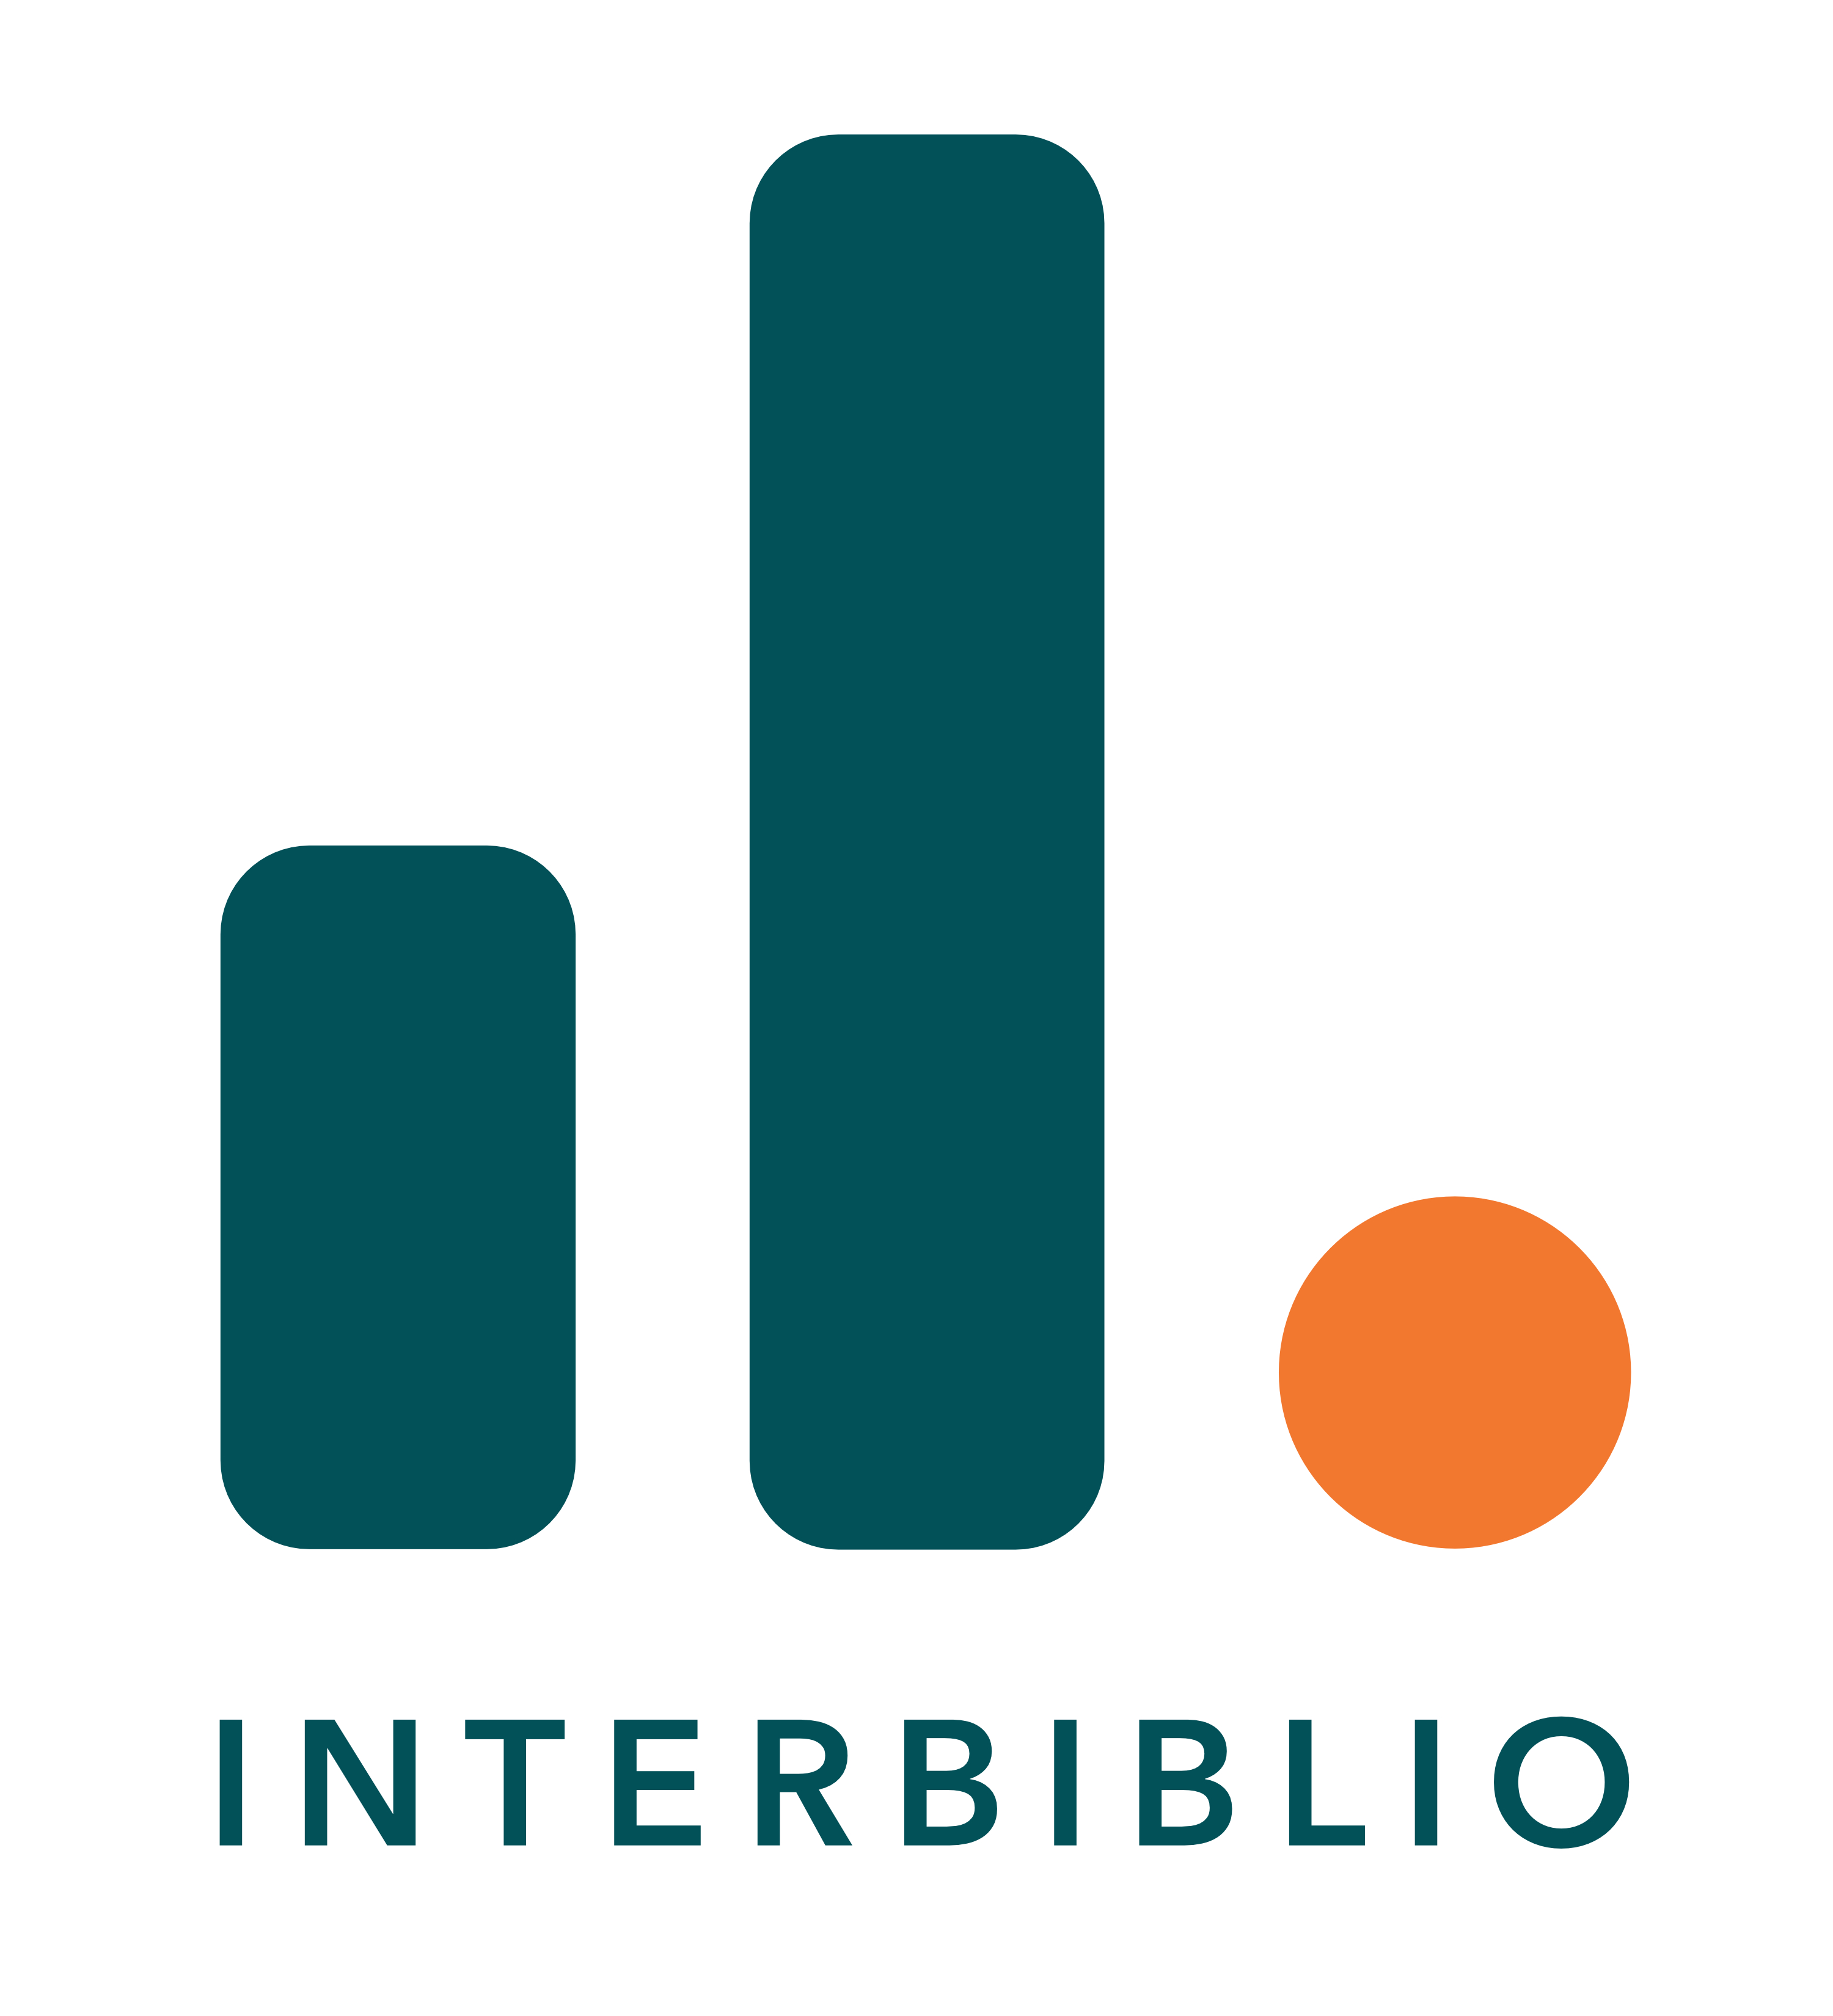 Logo Interbiblio farbig